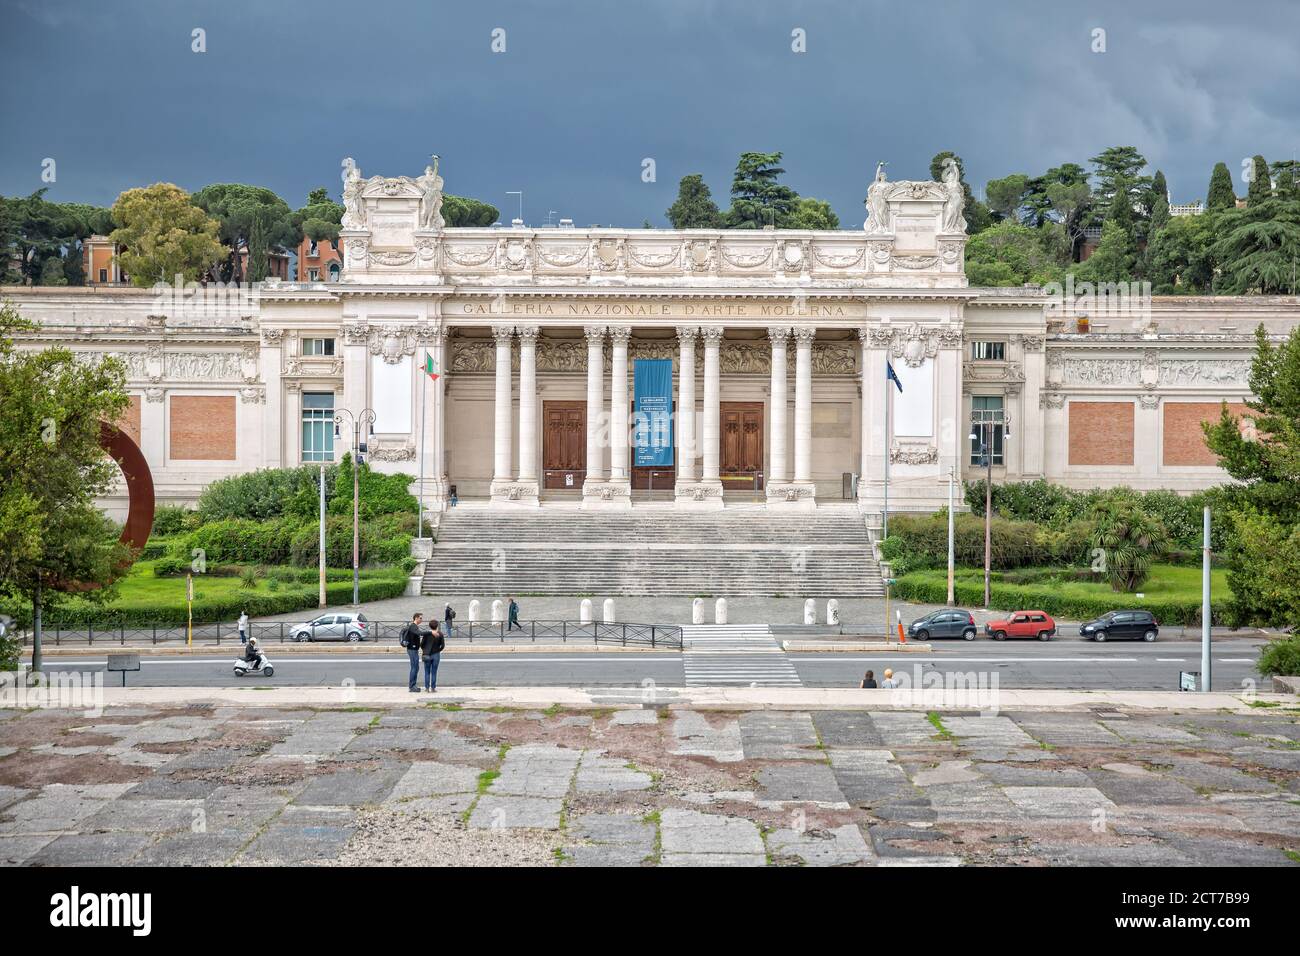 Roma,Italia - 15 de mayo de 2016:la Galería Nazionale d'Arte moderna es una galería de arte en Roma, fundada en 1883 y dedicada al arte moderno y contemporáneo Foto de stock